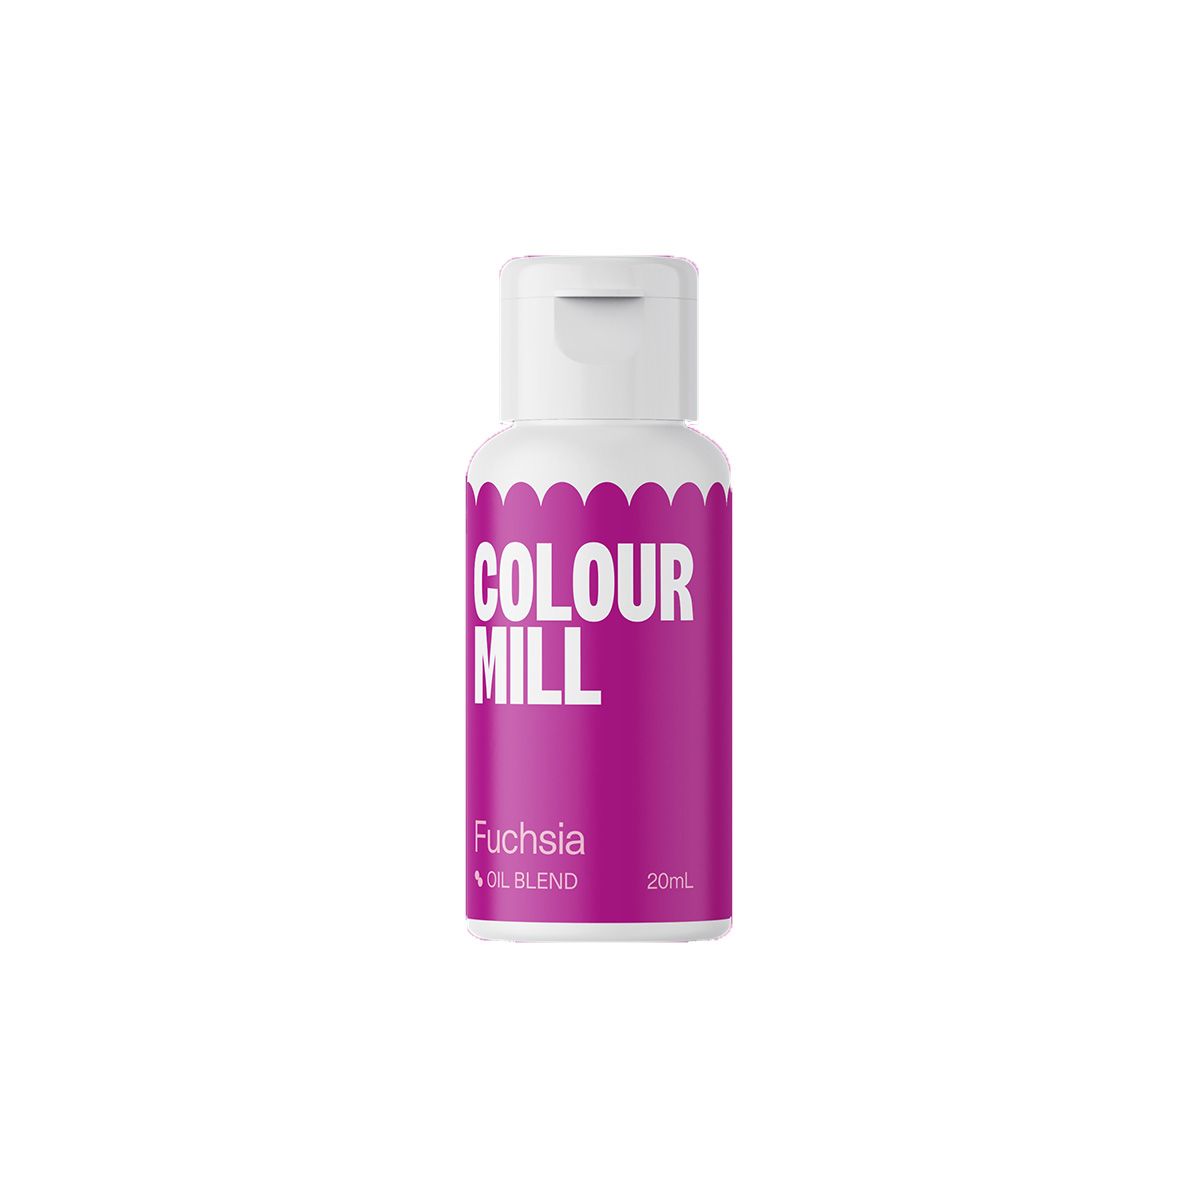 Colour Mill Oil Blend - Fuchsia